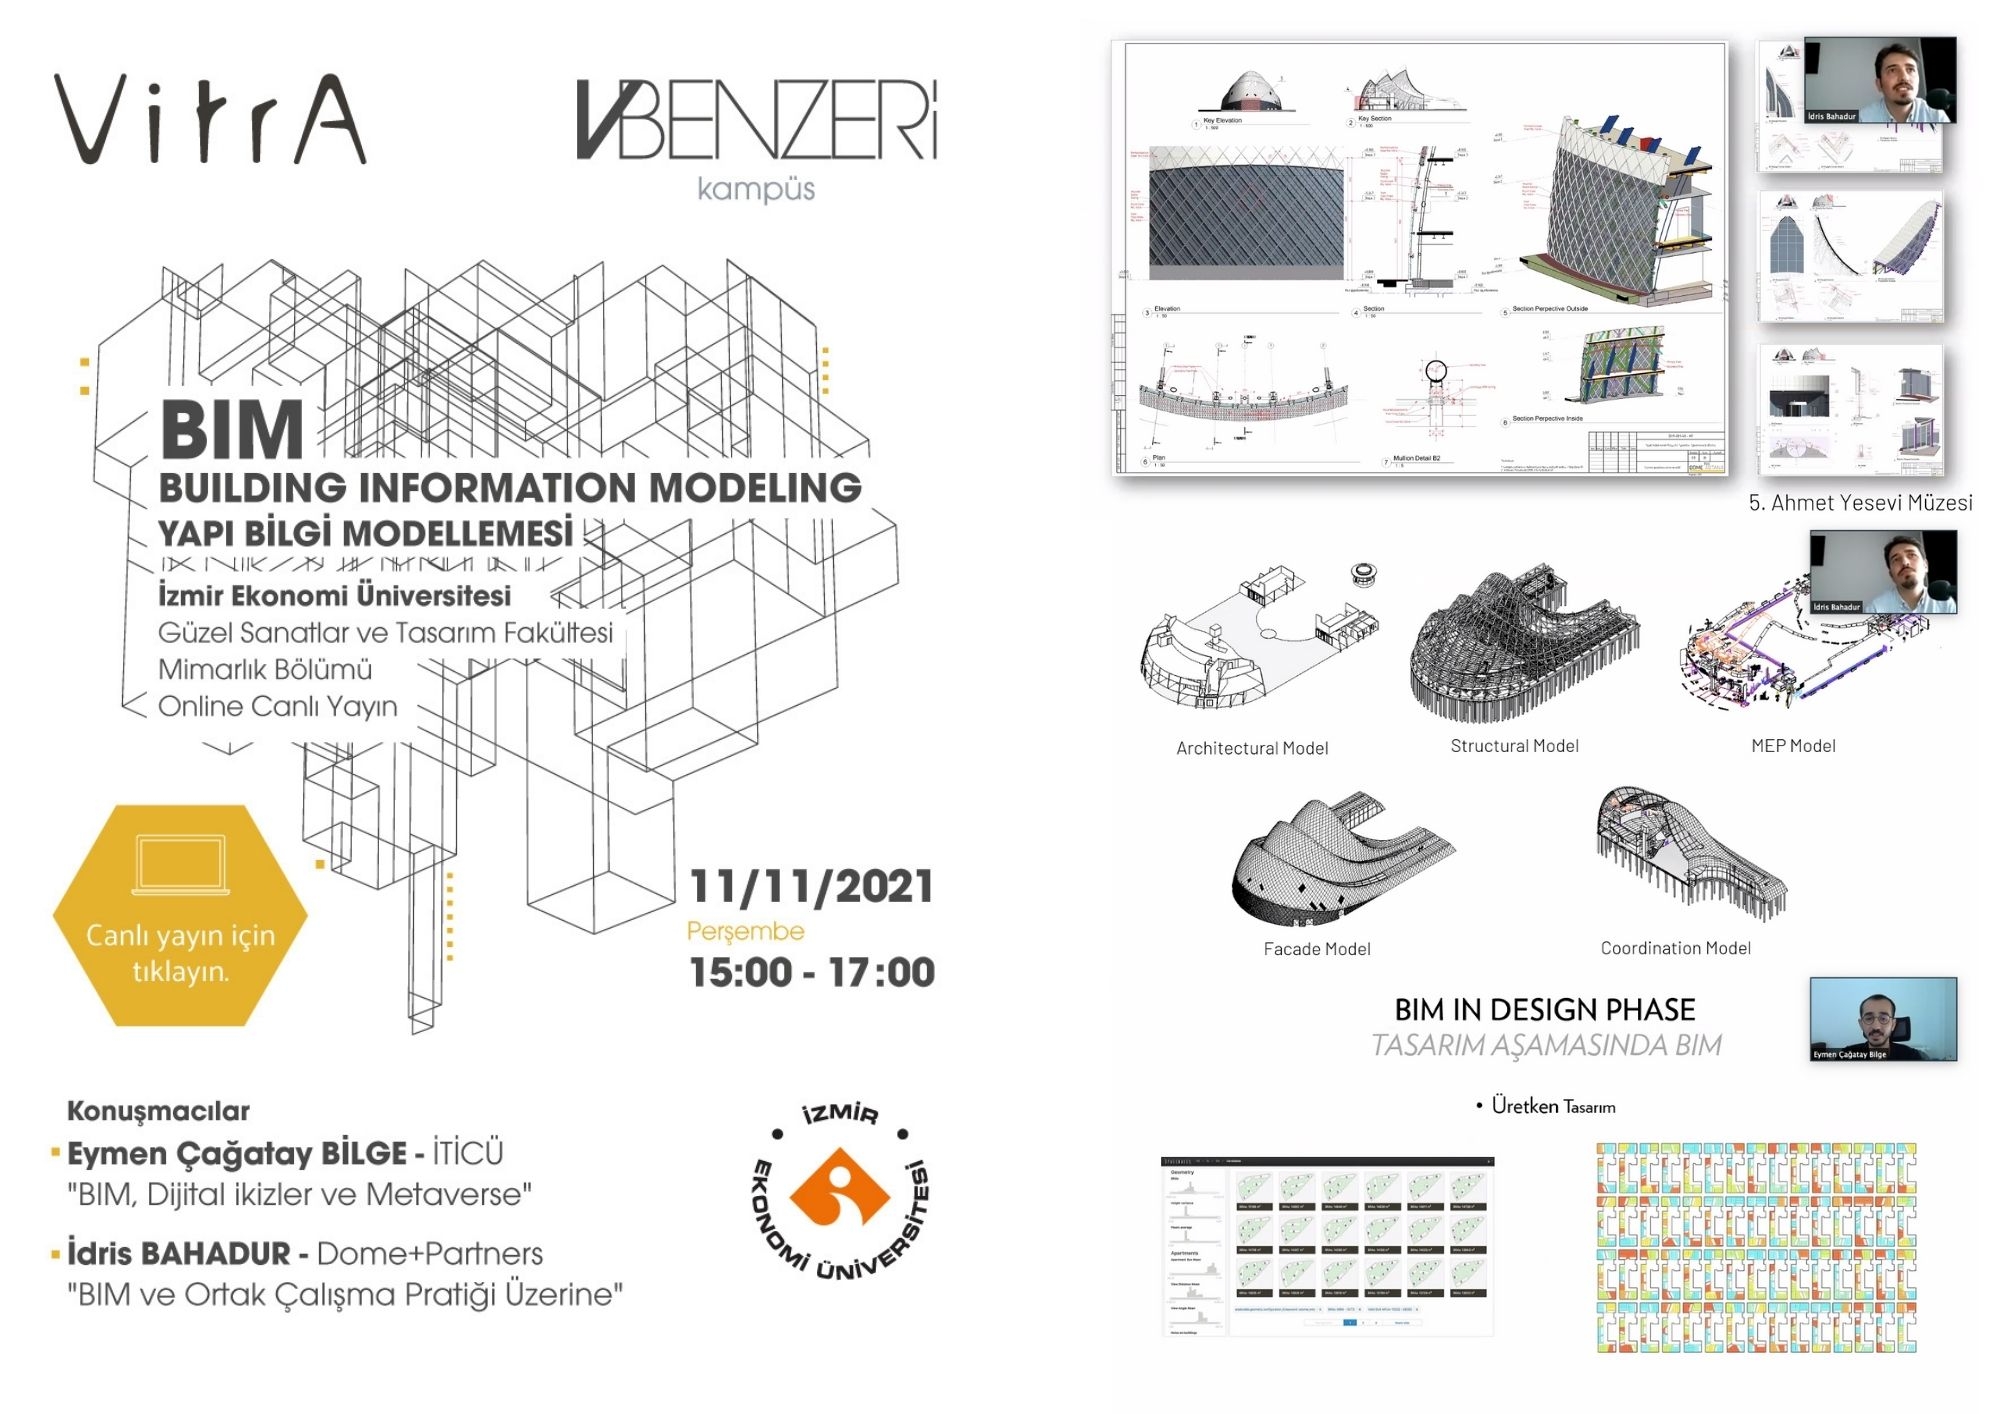 Vitra & VBenzeri Kampüs işbirliği ile “BIM: Bina Bilgi Modellemesi”